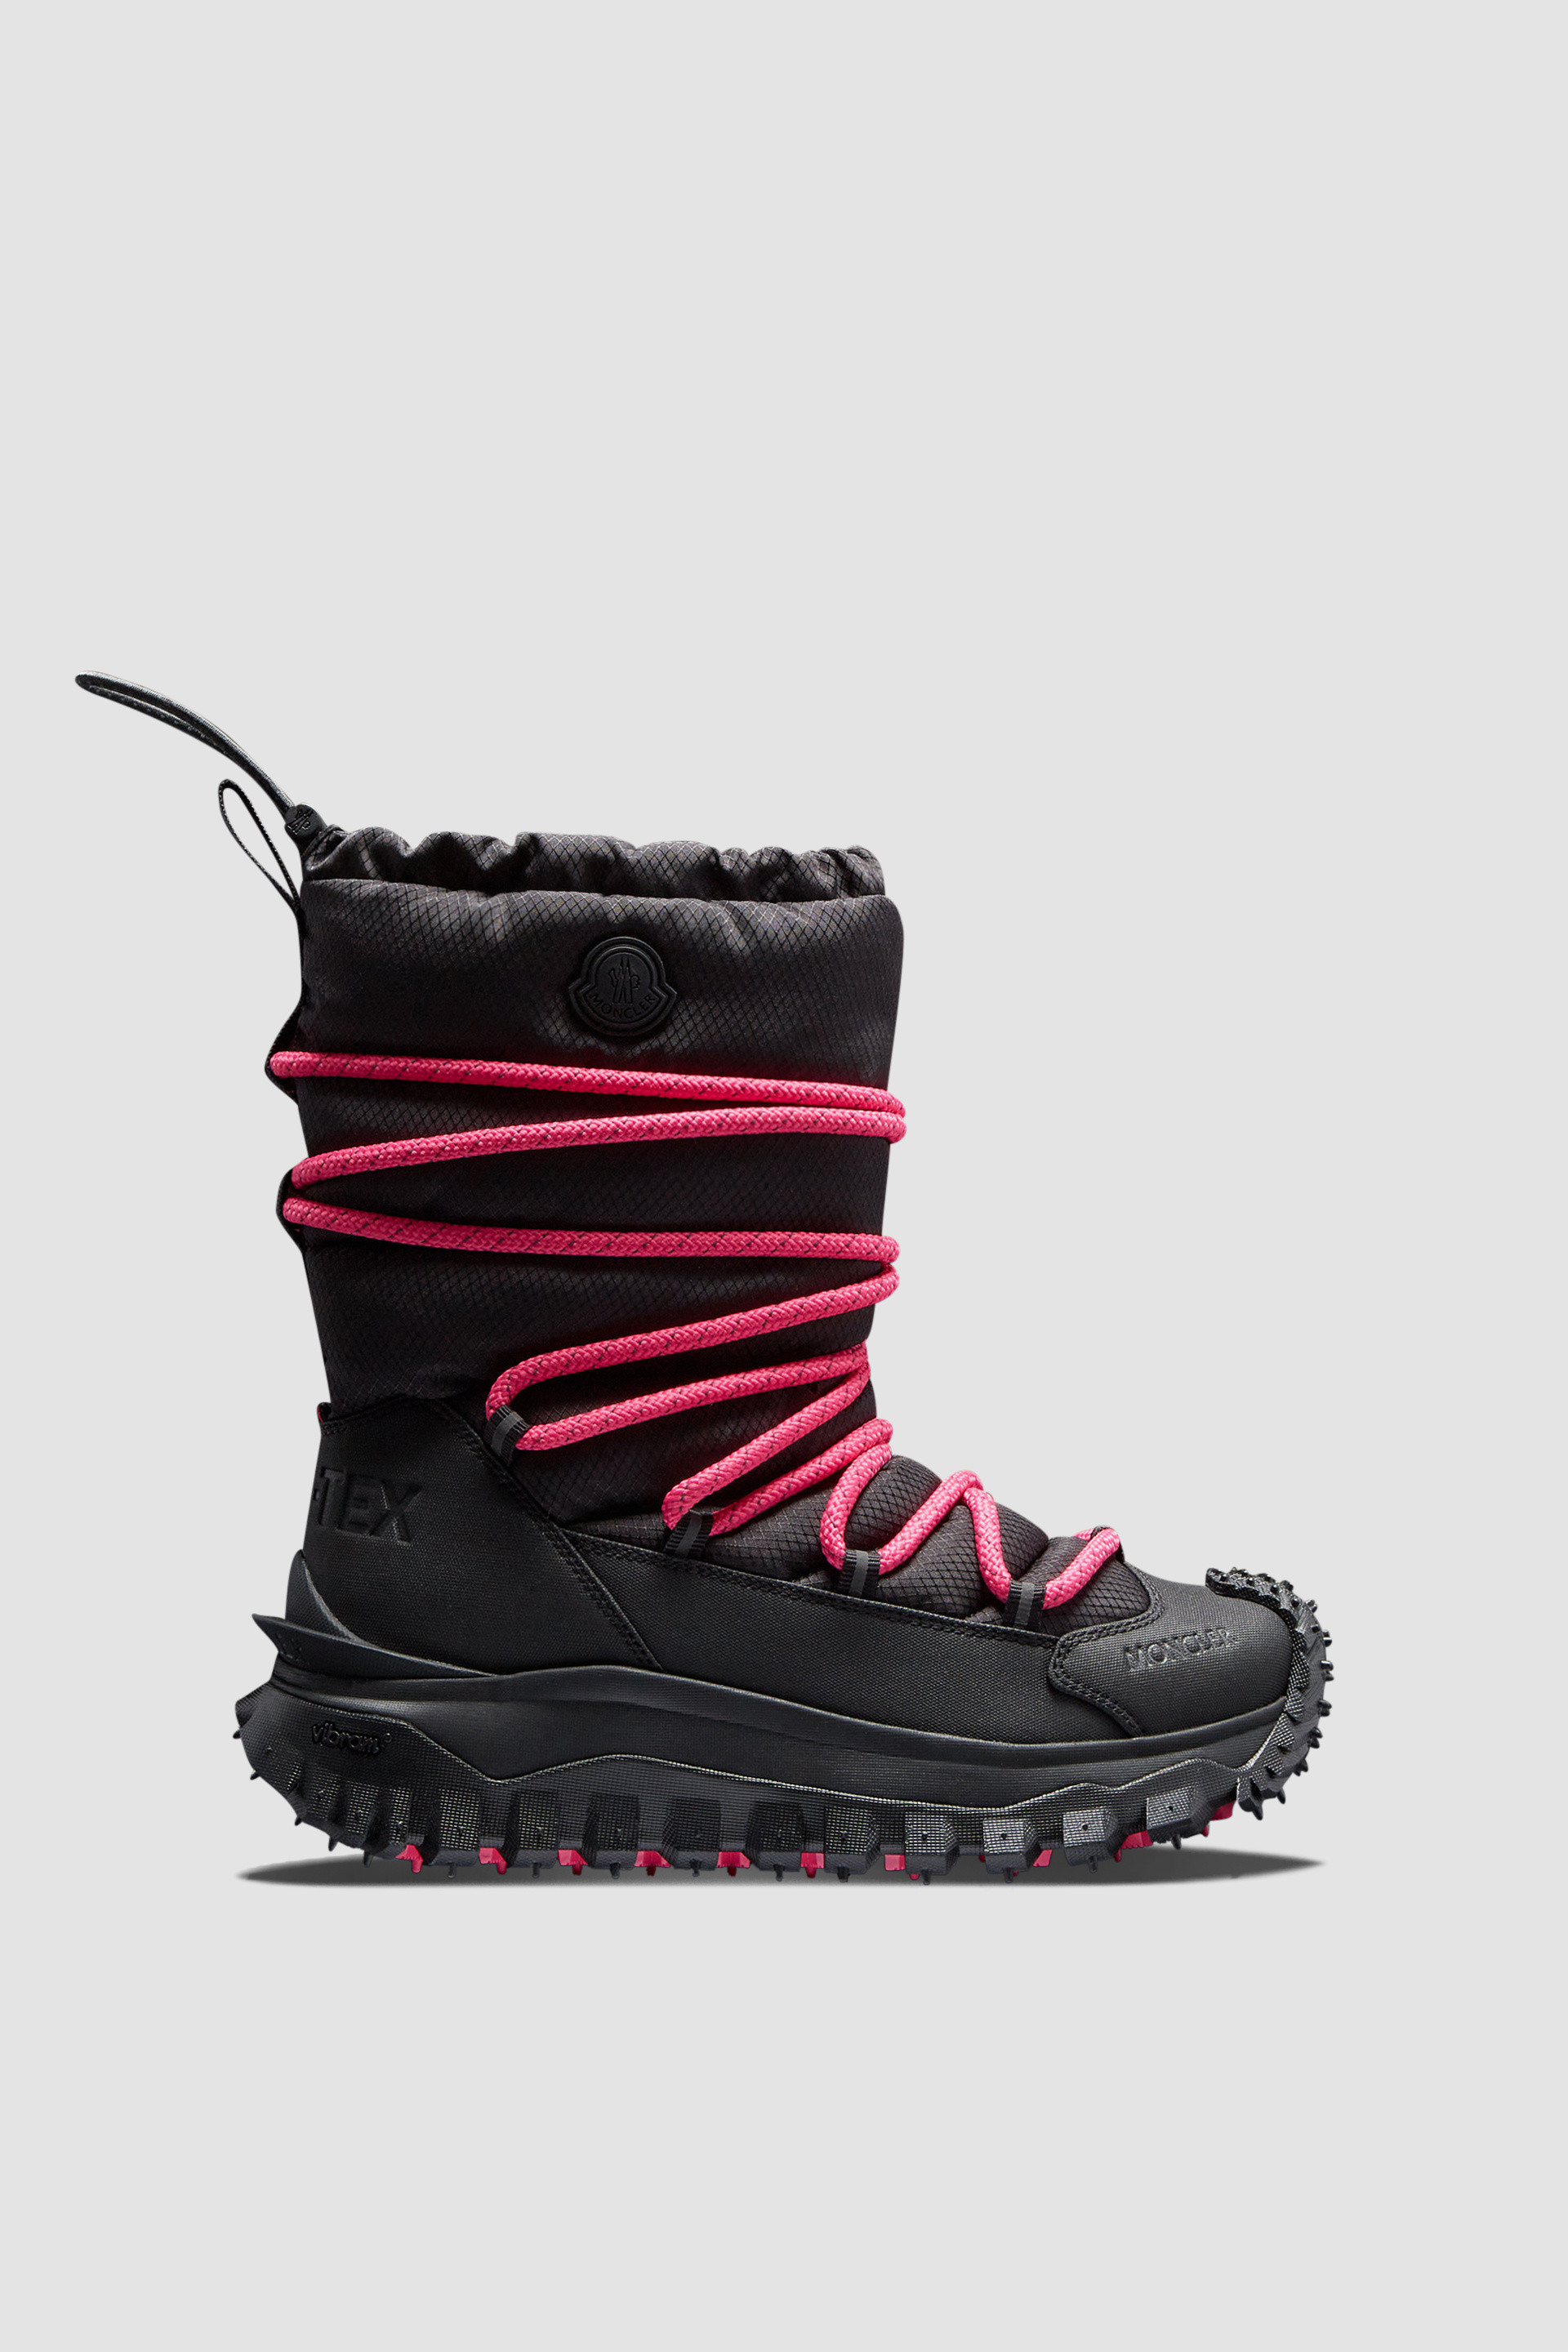 Black Trailgrip Après Boots - Boots for Women | Moncler US